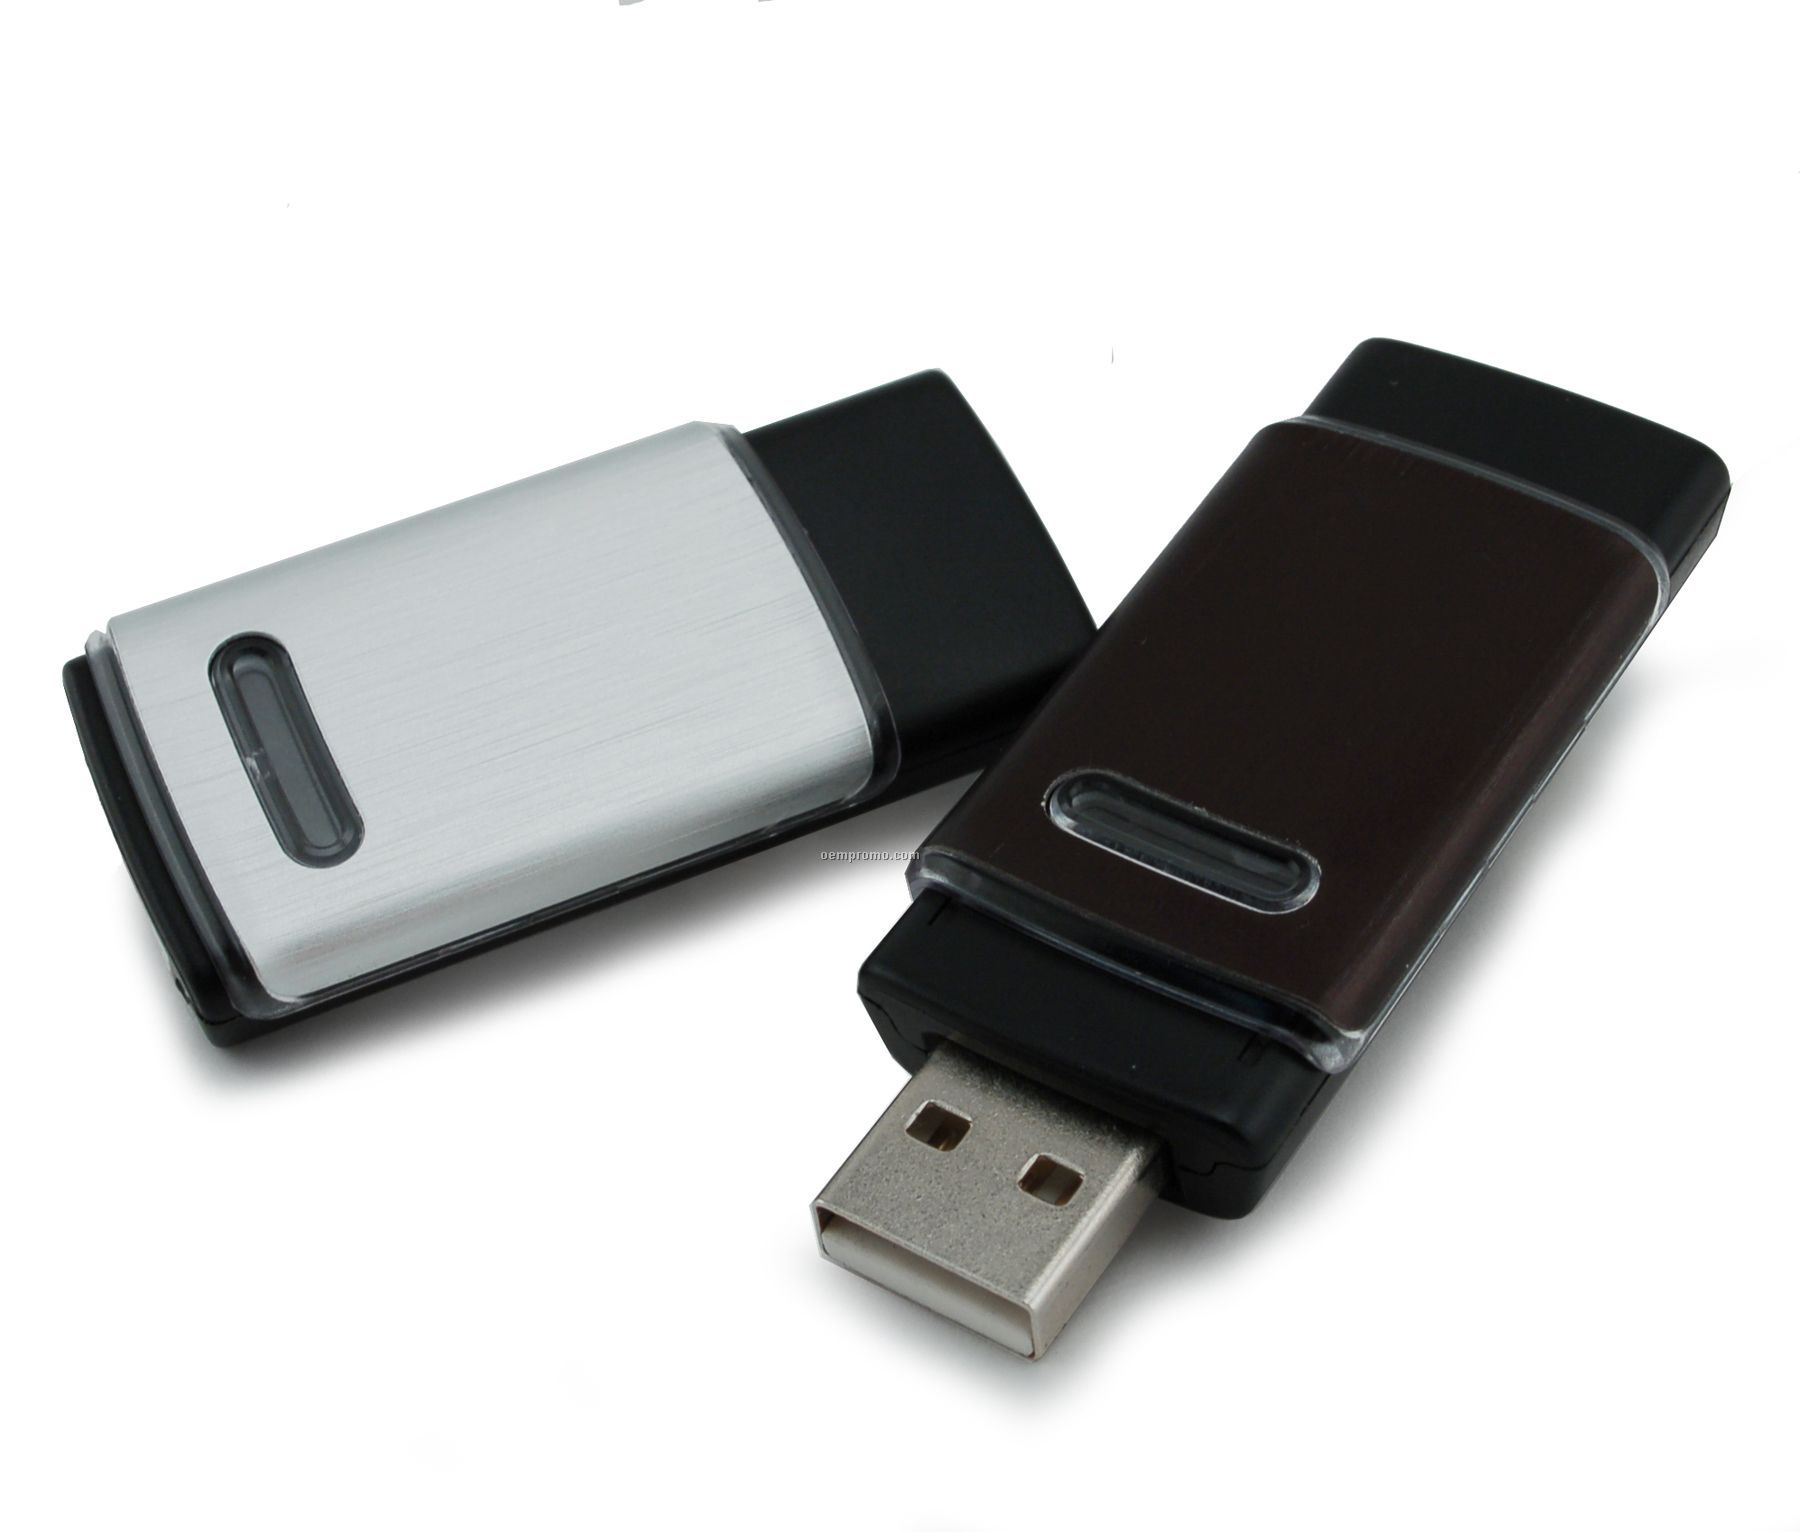 2 Gb Retractable USB Drive 600 Series